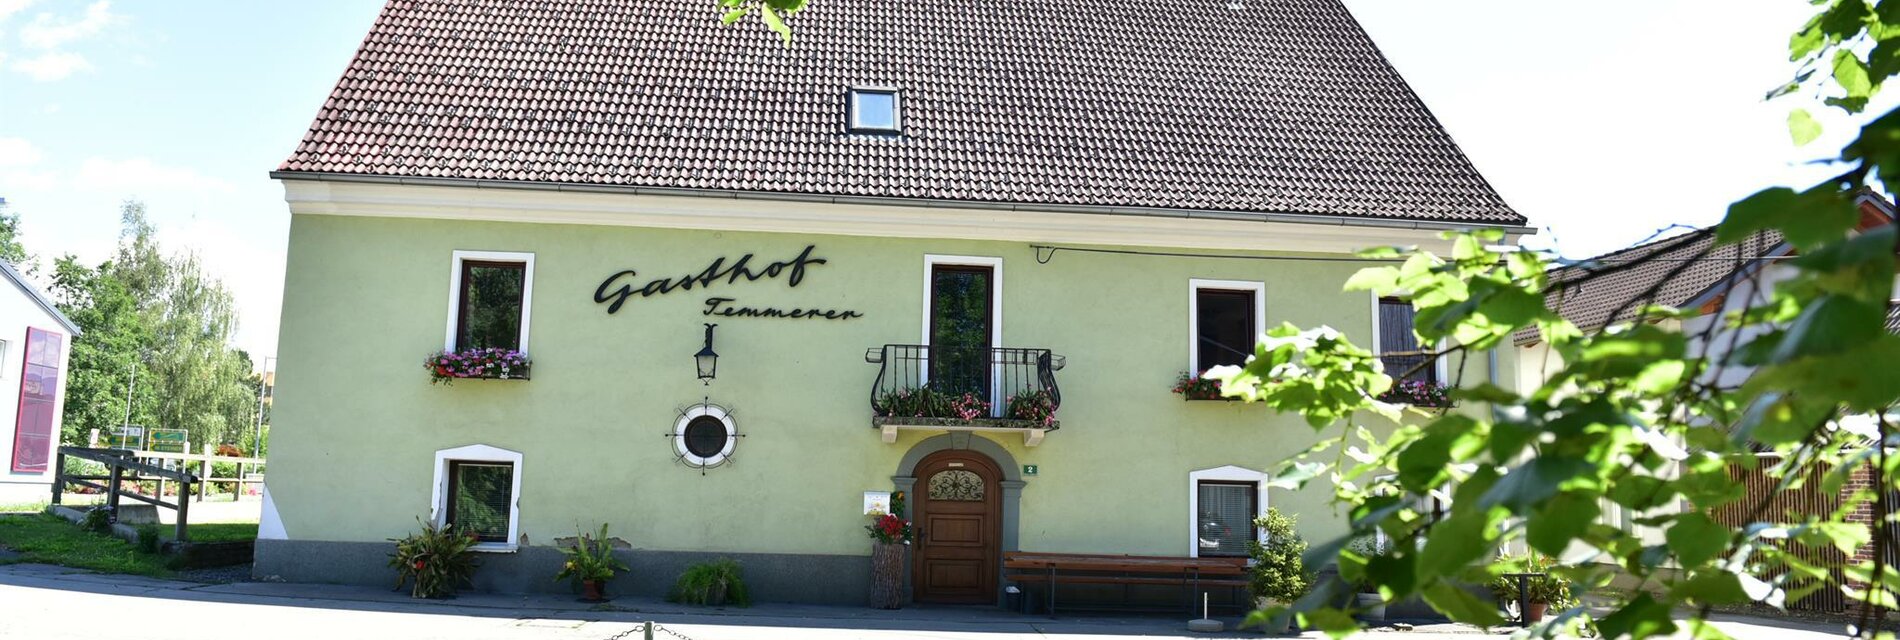 GasthausTemmerer-Außenansicht-Murtal-Steiermark